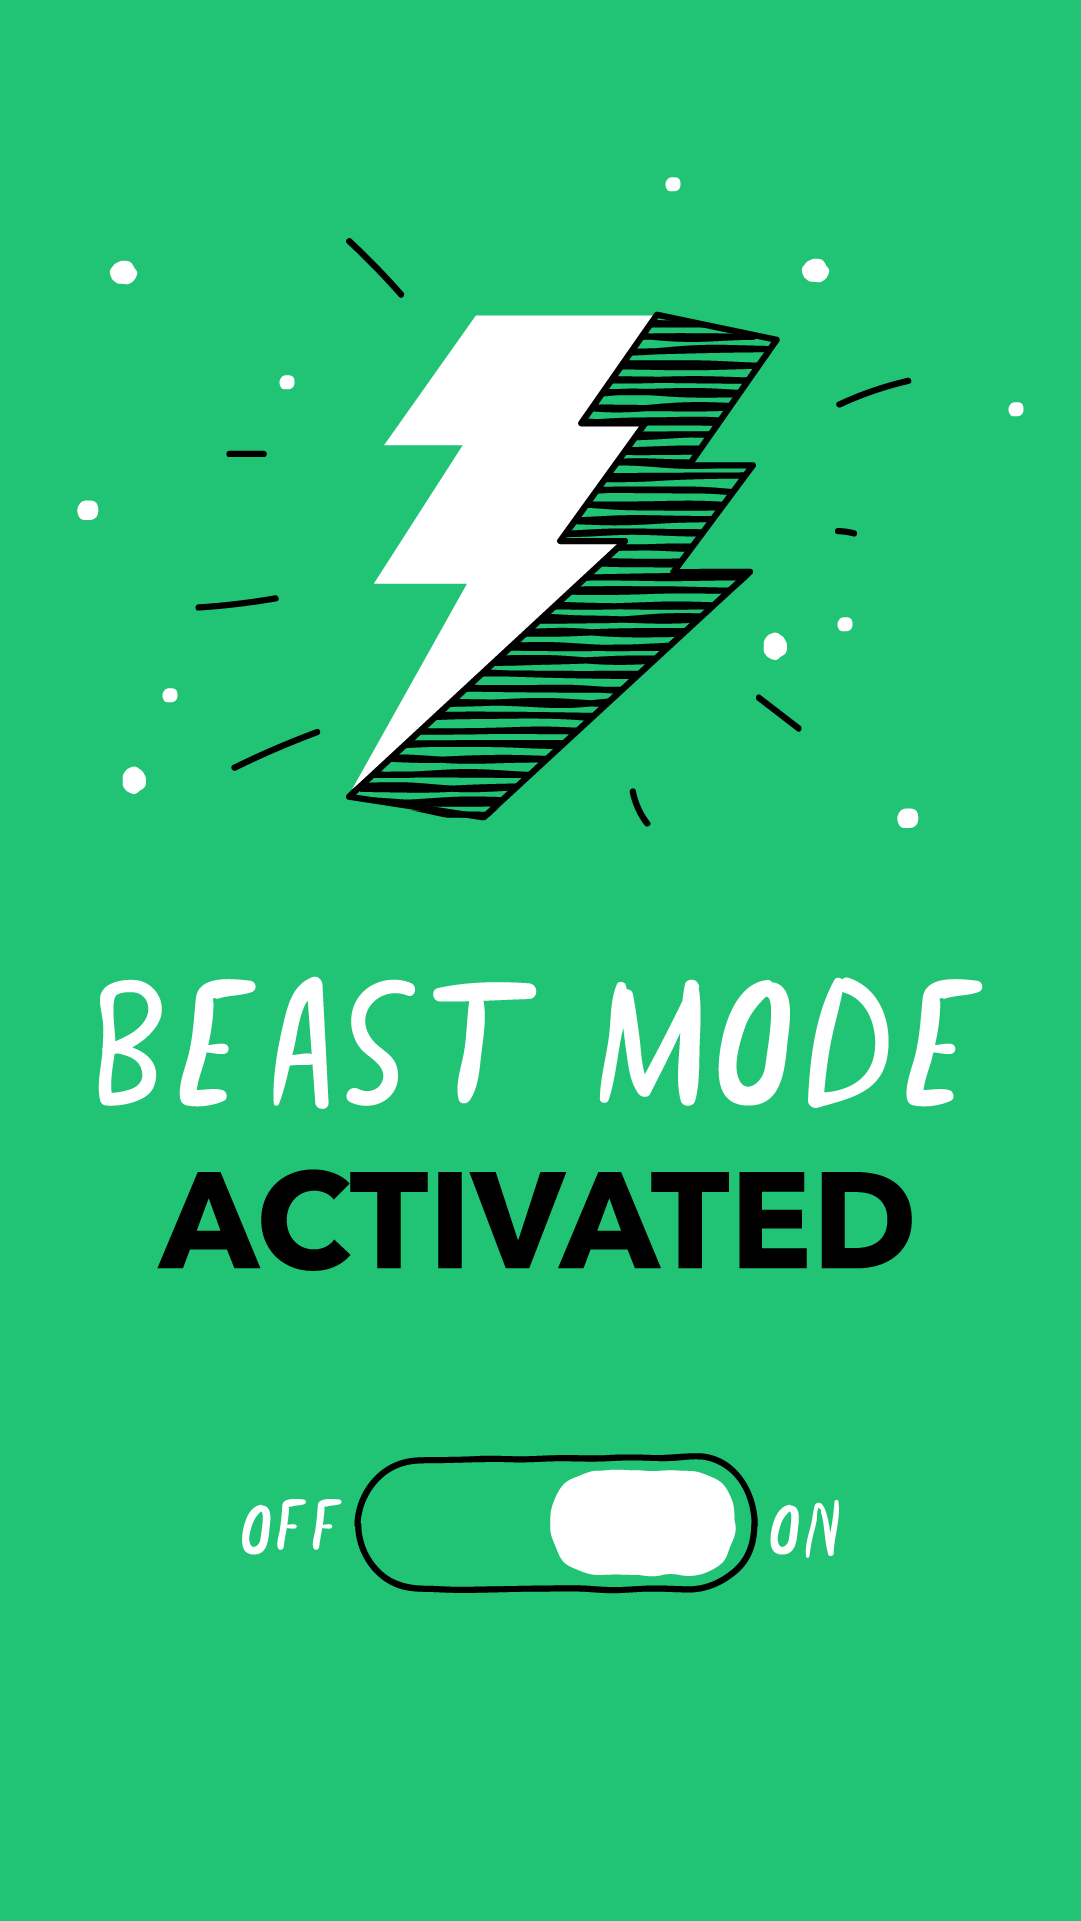 beast mode iphone 5 wallpaper